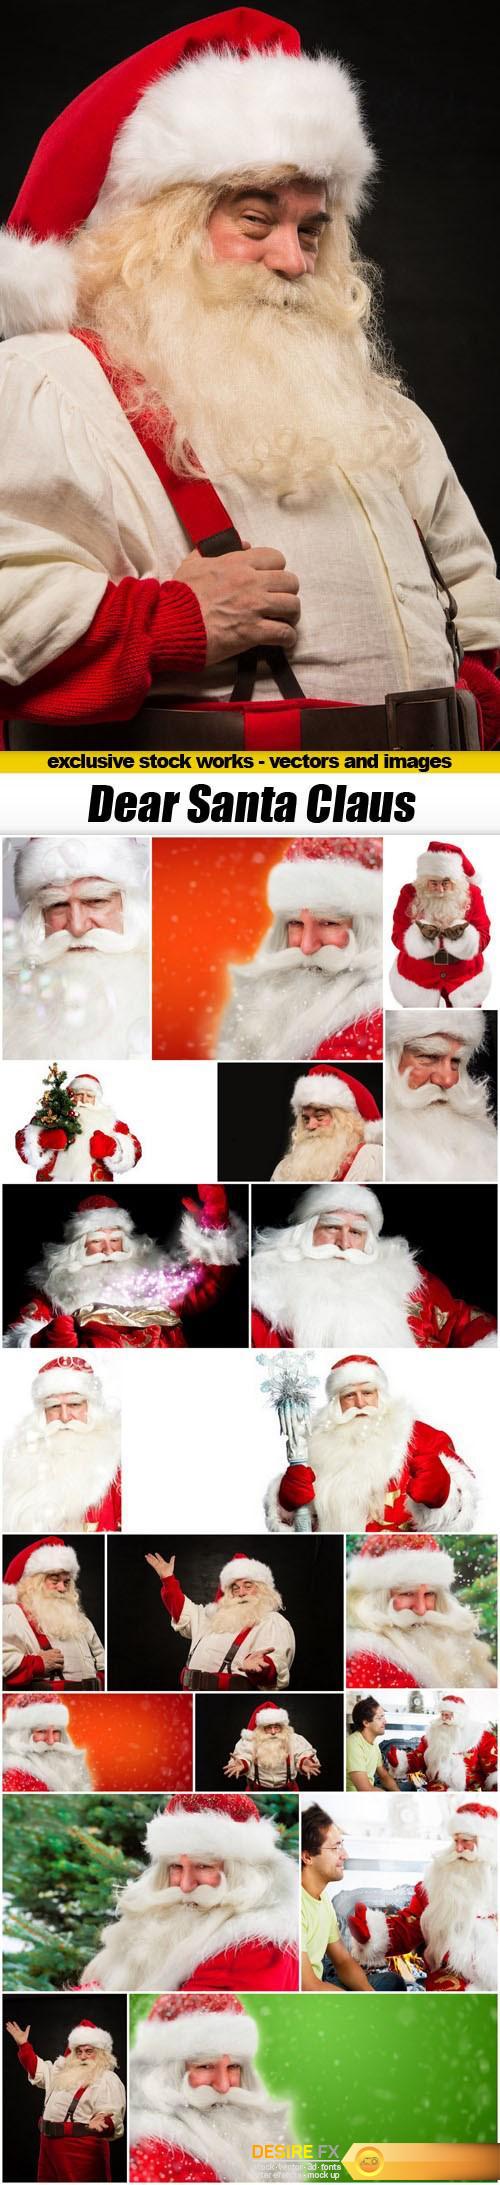 Dear Santa Claus - 20xUHQ JPEG